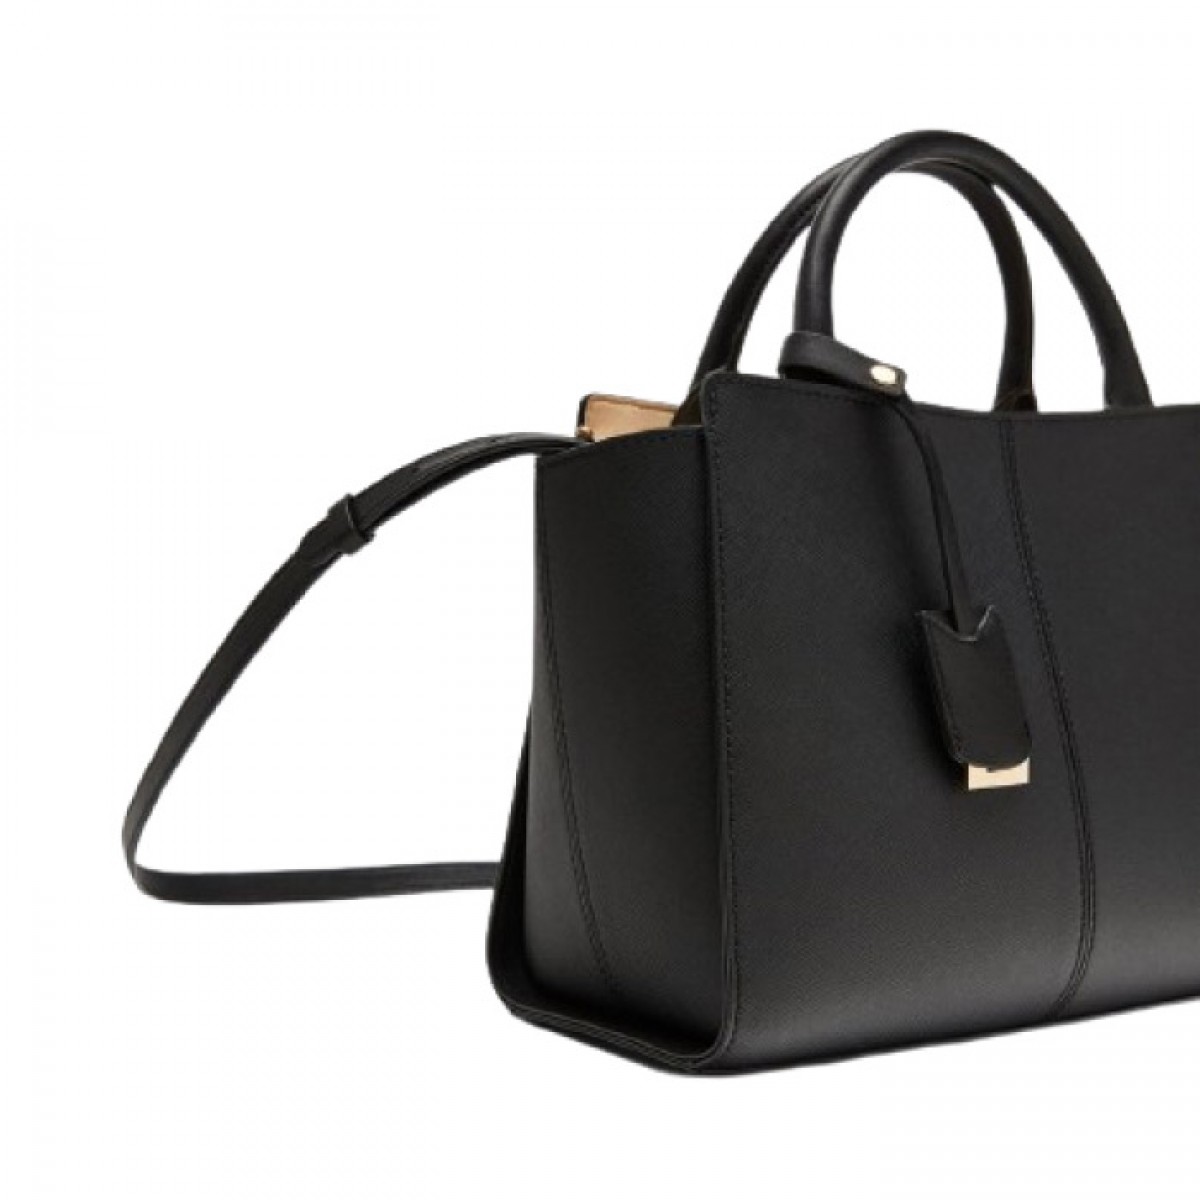 Zara Basic Tas Tote Bag Wanita Branded